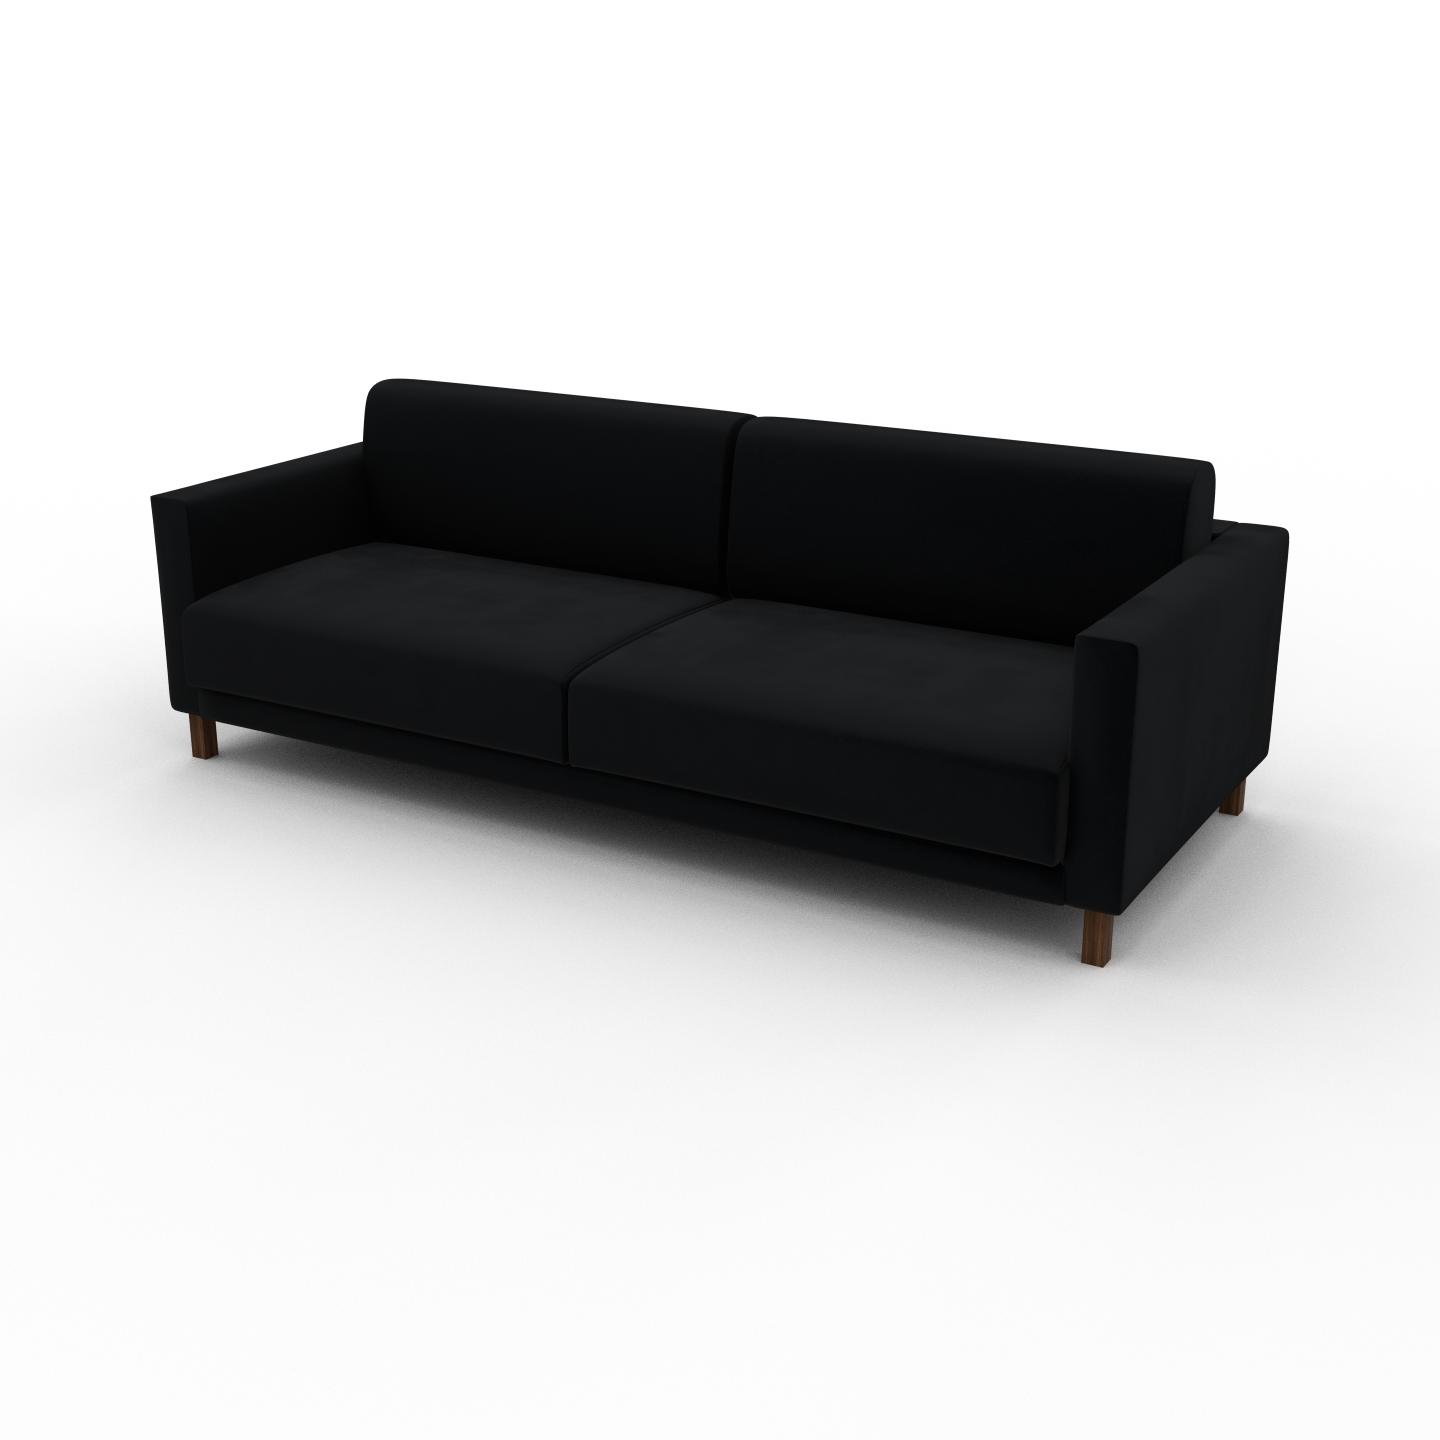 MYCS Sofa Samt Schwarz - Moderne Designer-Couch: Hochwertige Qualität, einzigartiges Design - 224 x 75 x 98 cm, Komplett anpassbar